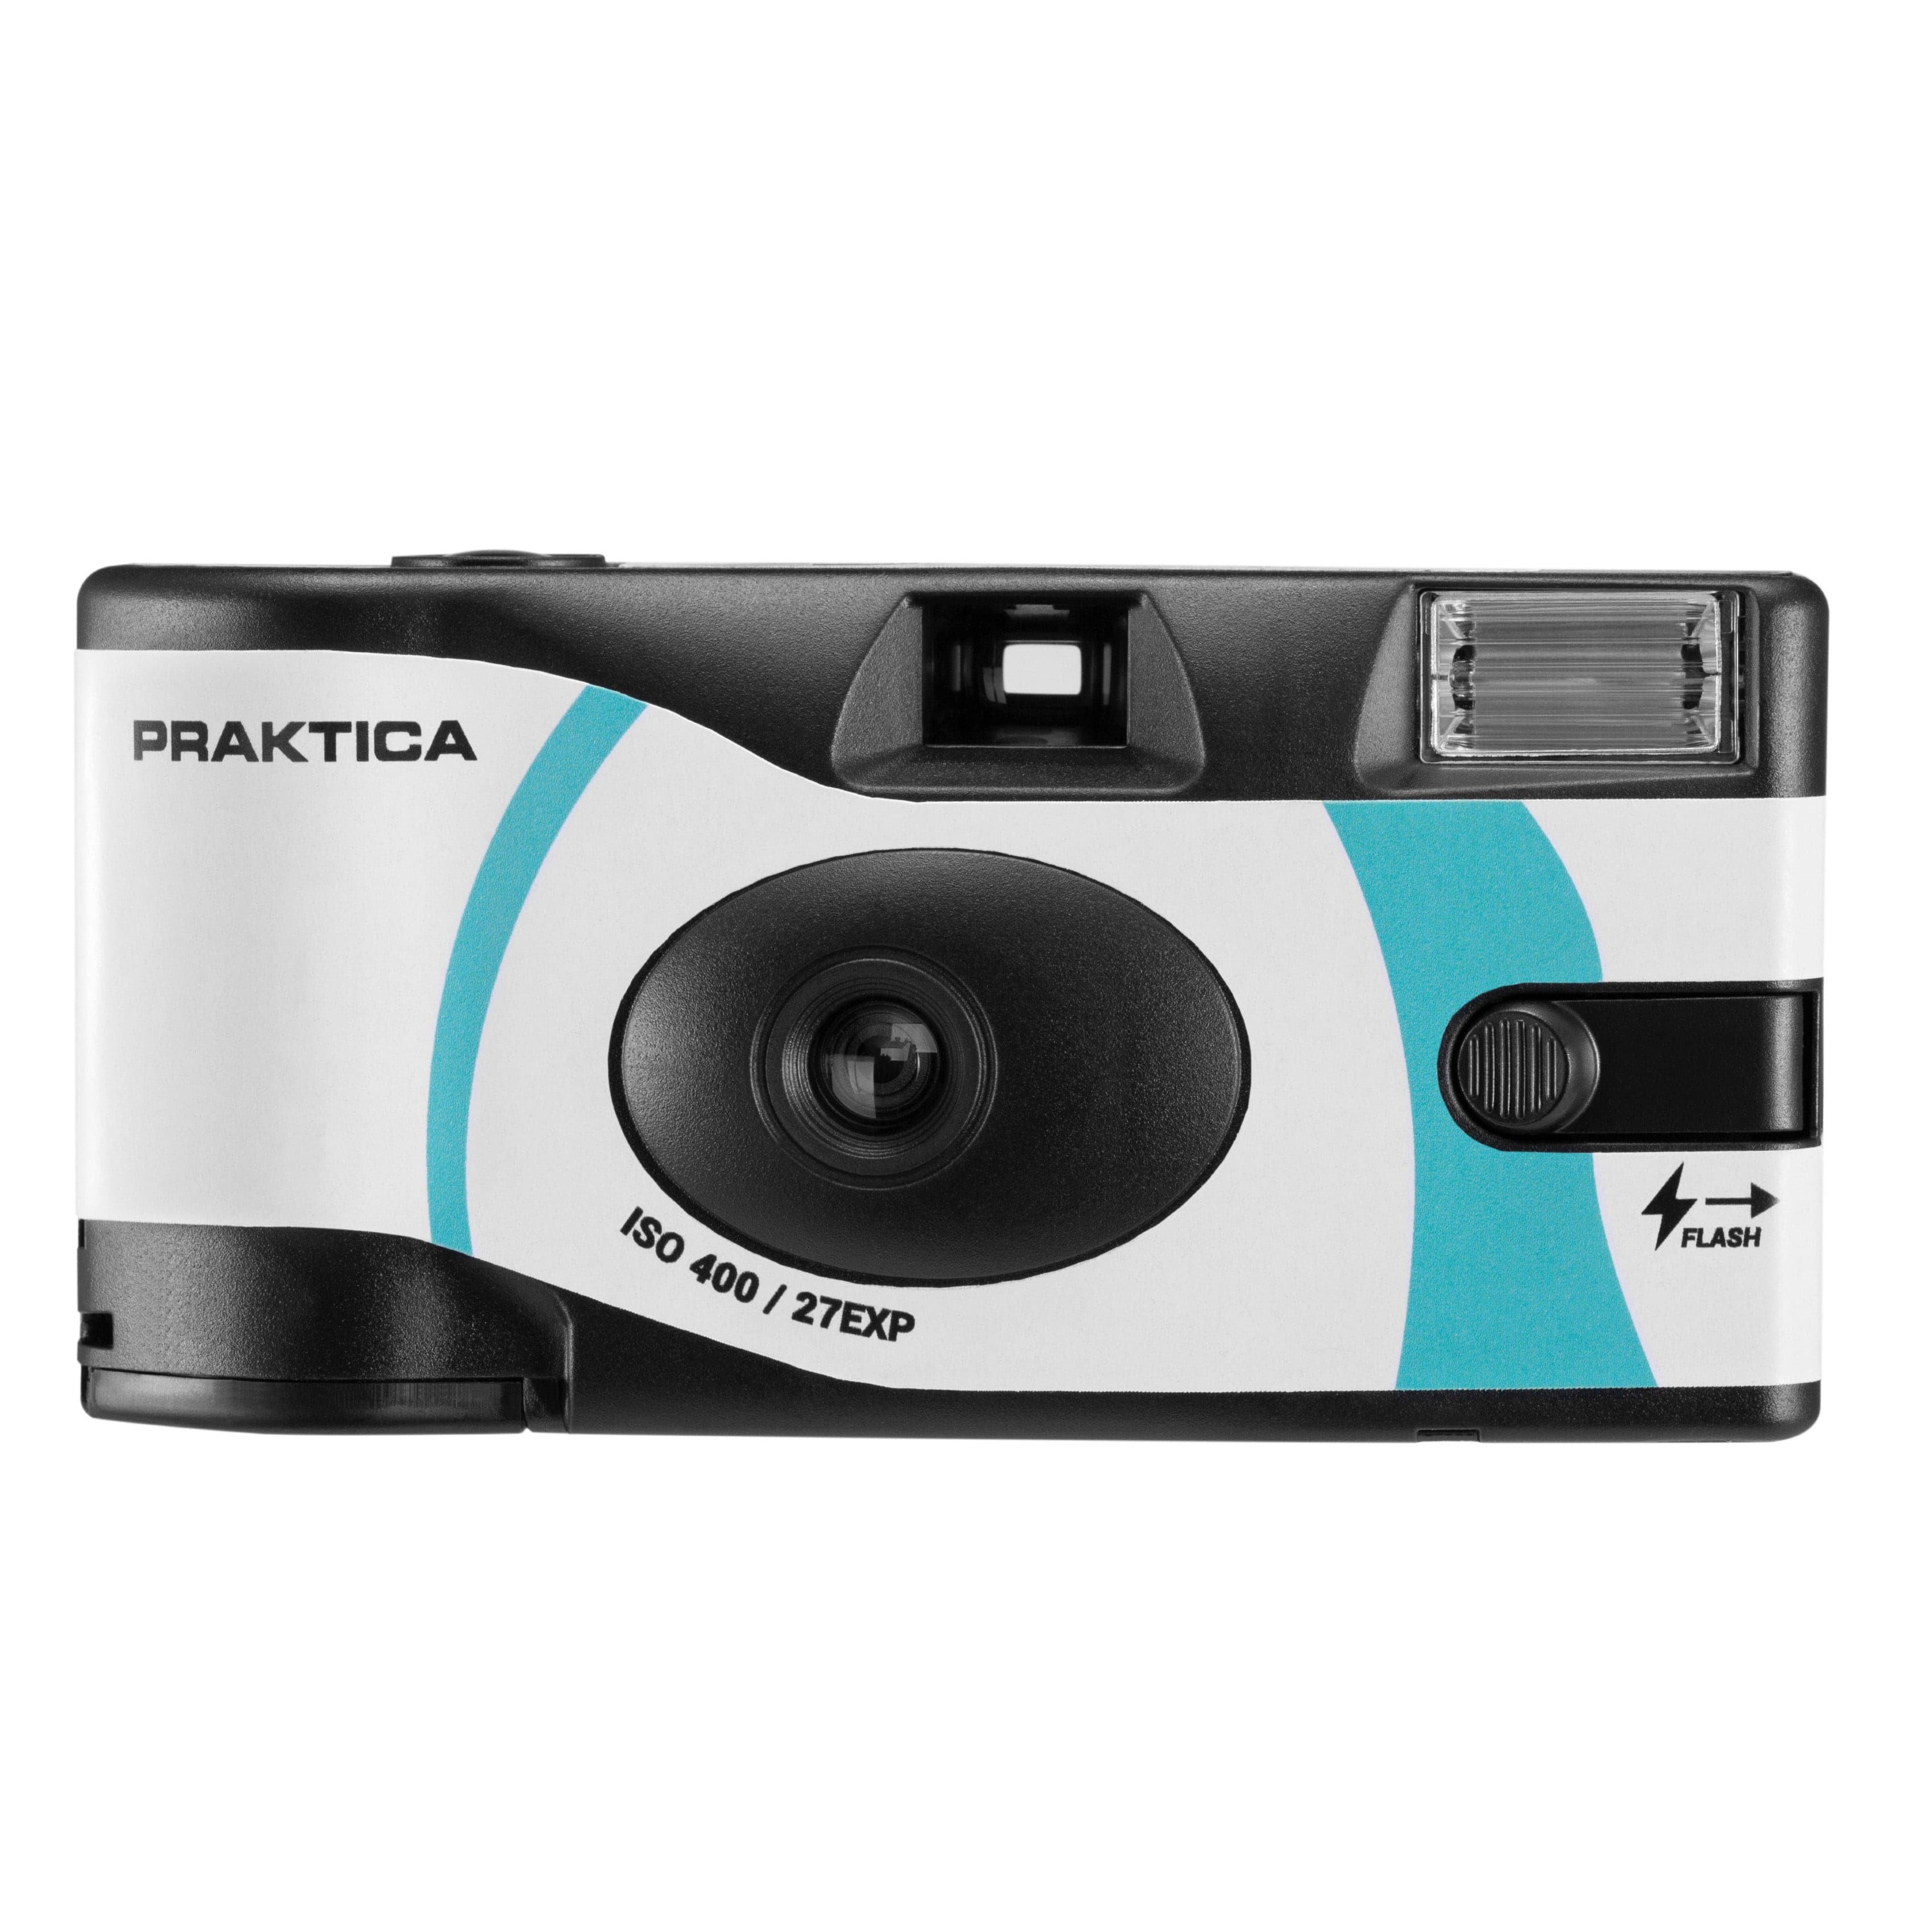 PRAKTICA Luxmedia 35mm Disposable Film Camera with Flash & 27 Exposure ISO400 Film (Single)